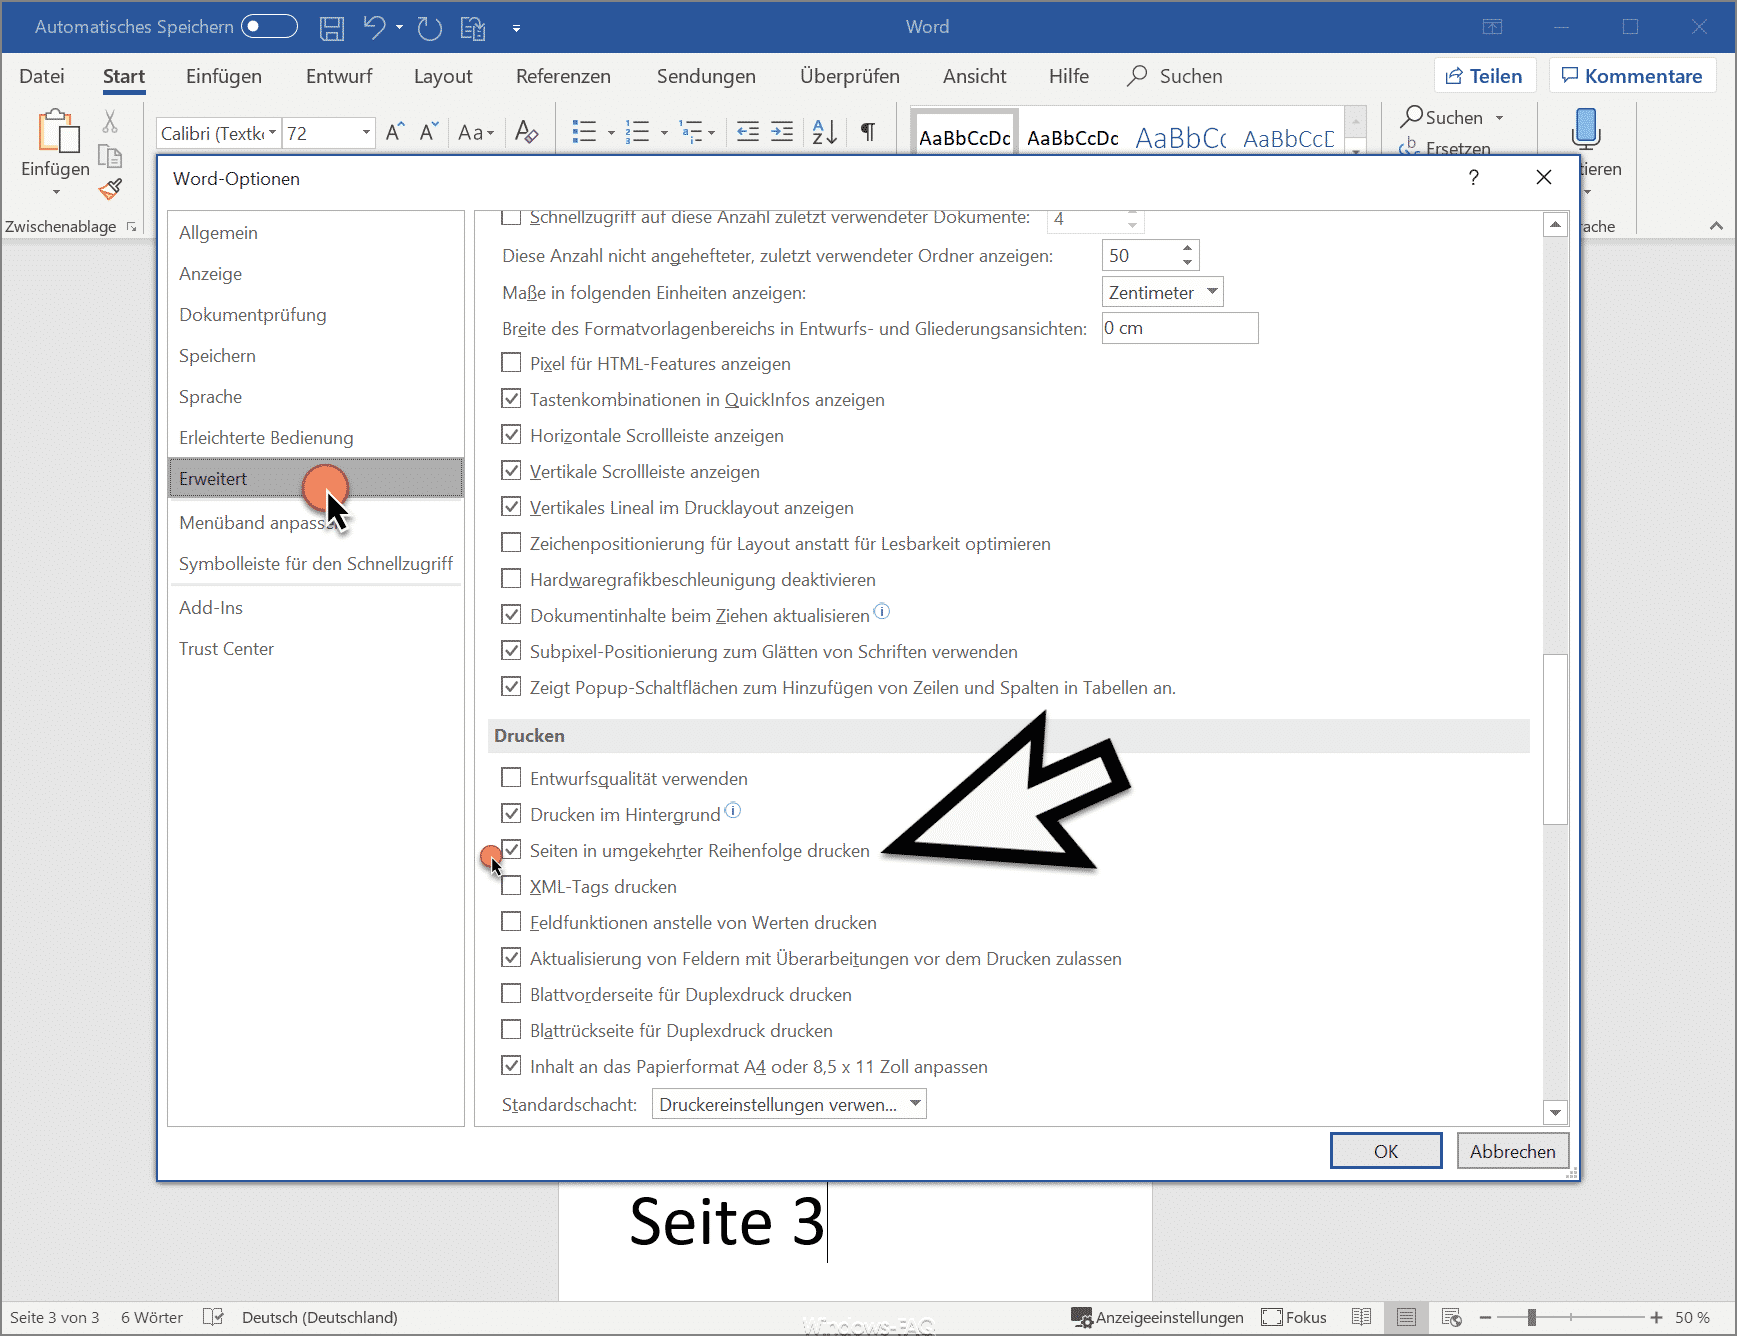 Seiten in umgekehrter Reihenfolge drucken im Microsoft Word